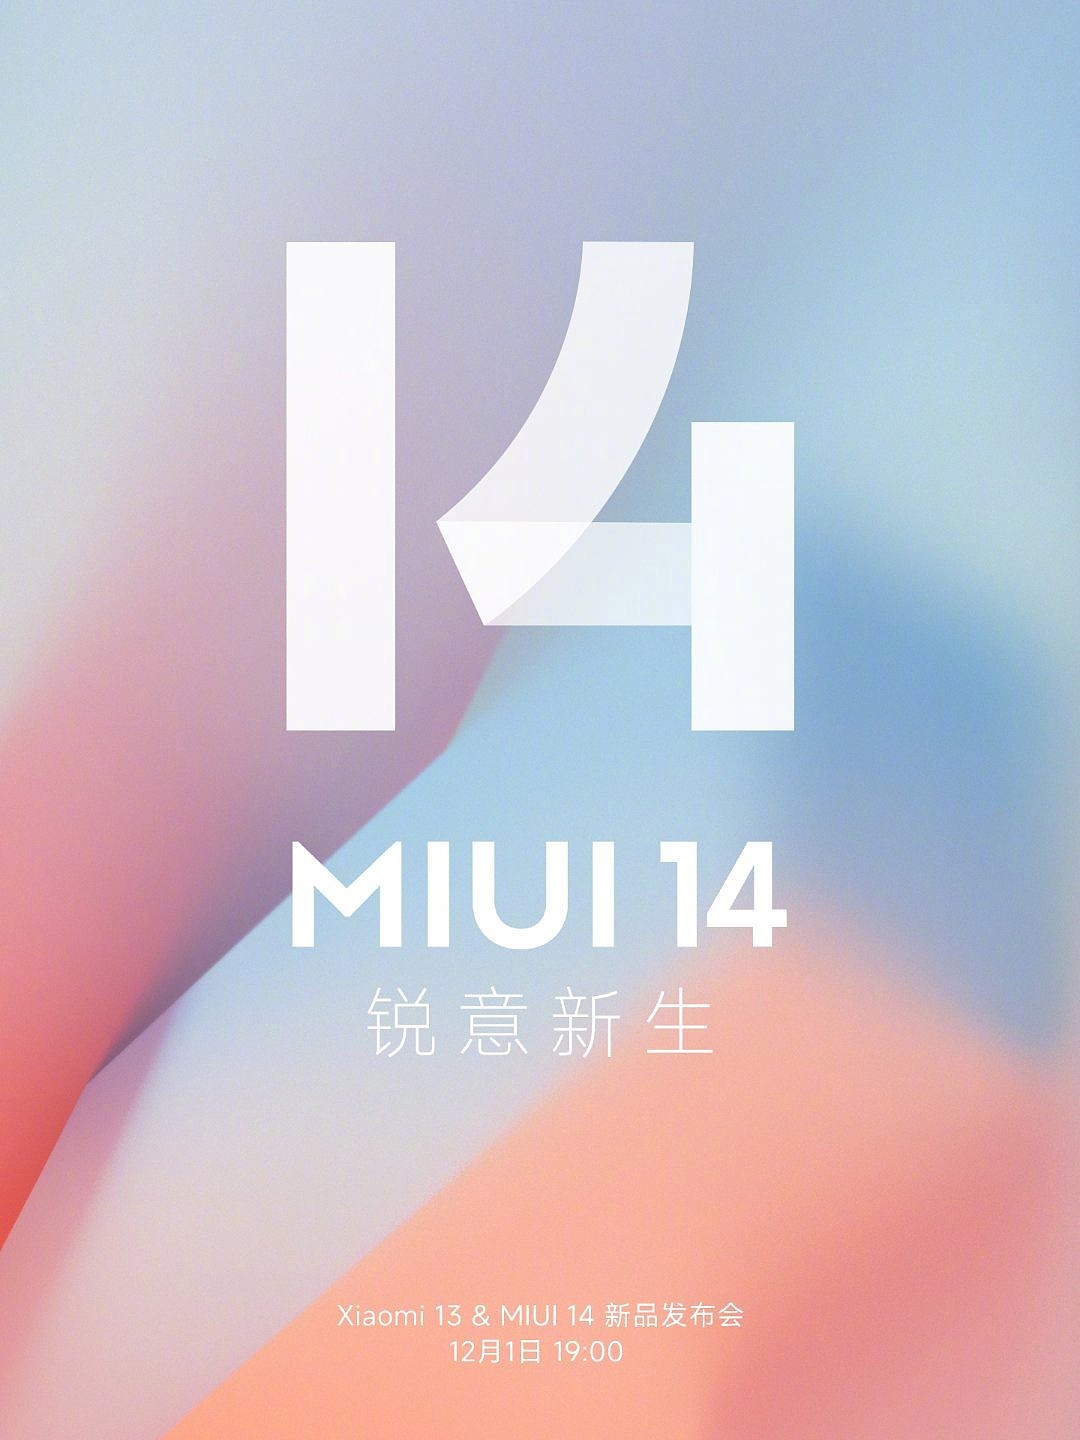 小米 MIUI 14 将展开“剃刀计划” ，打造固件最小、占用内存最小超纯净系统 - 2